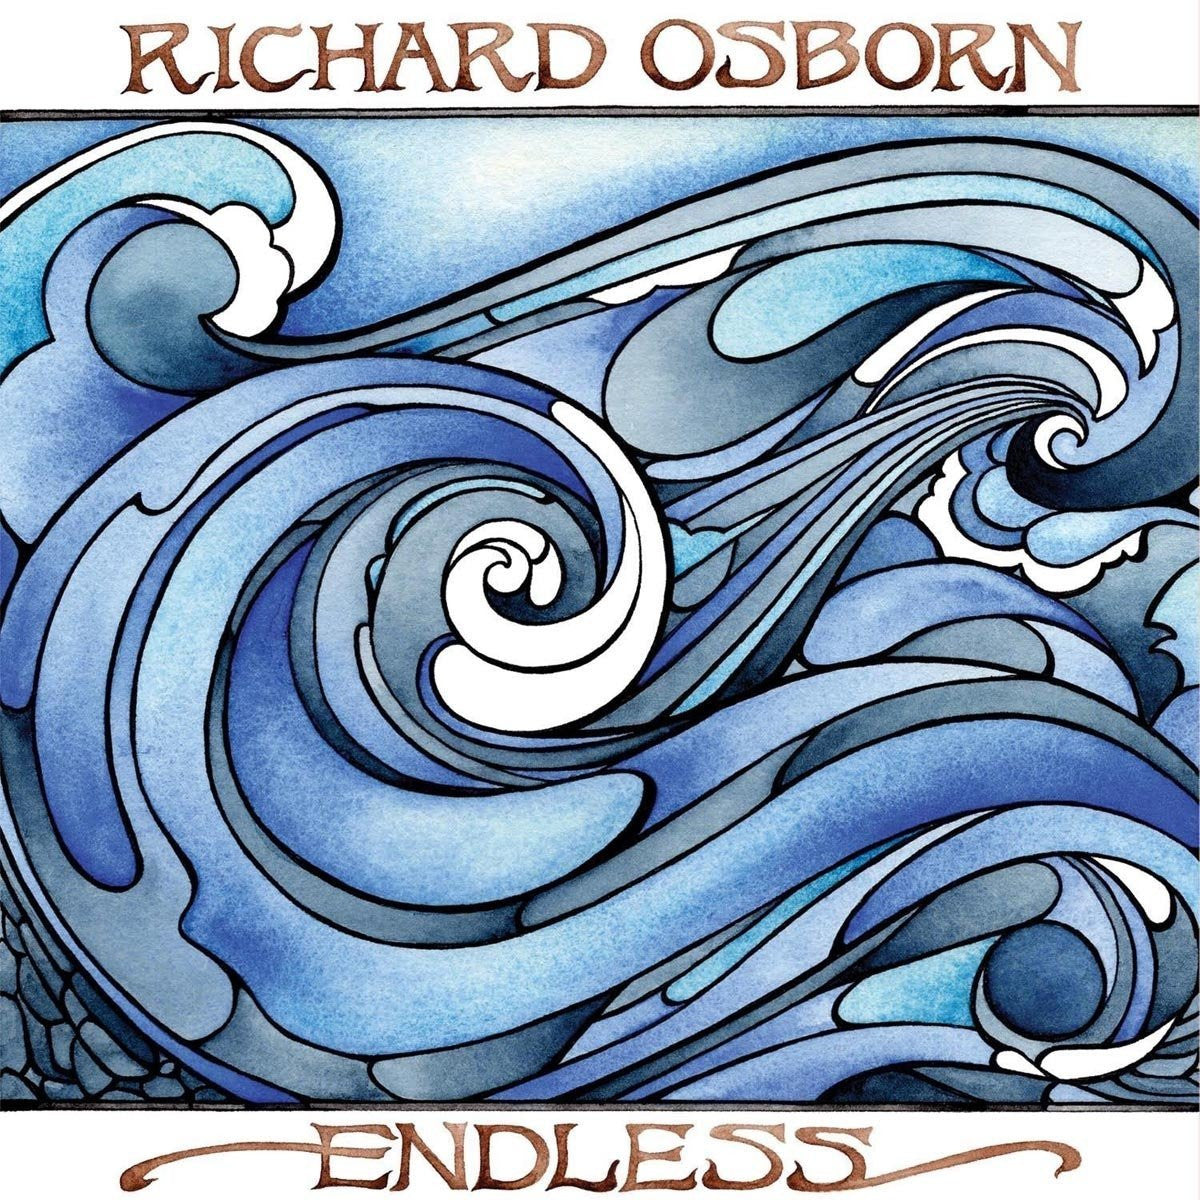 Richard Osborn - Endless CD